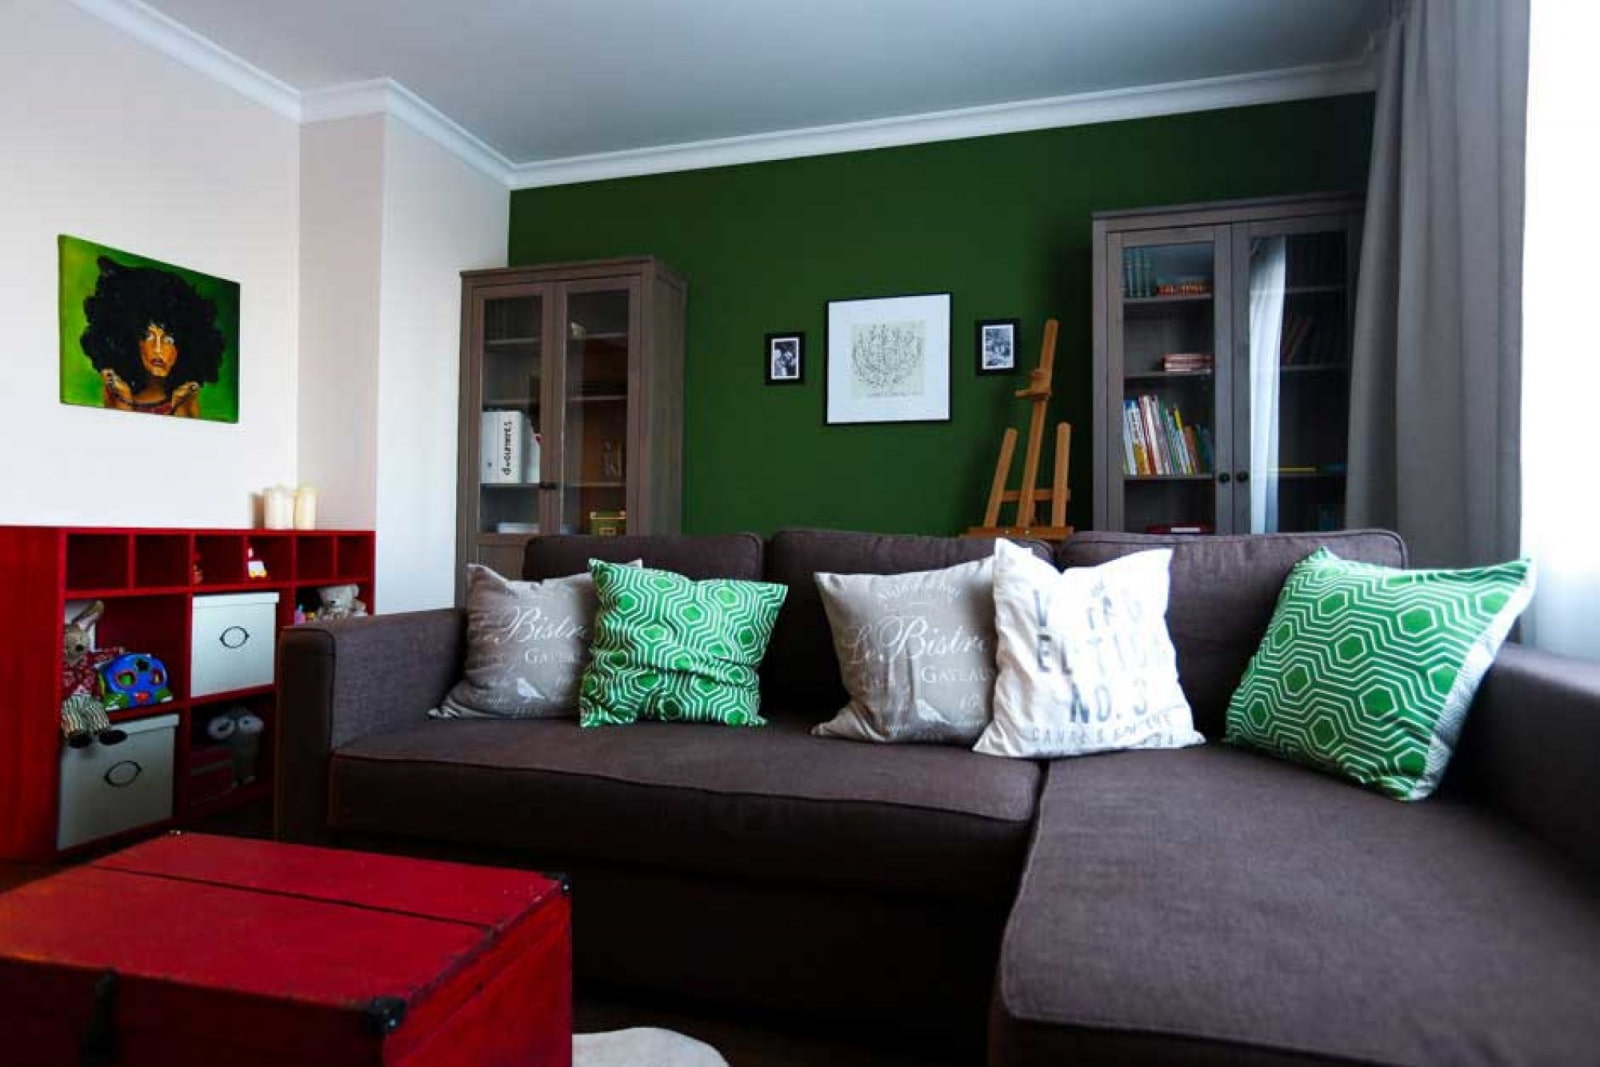 мебель к зеленым стенам